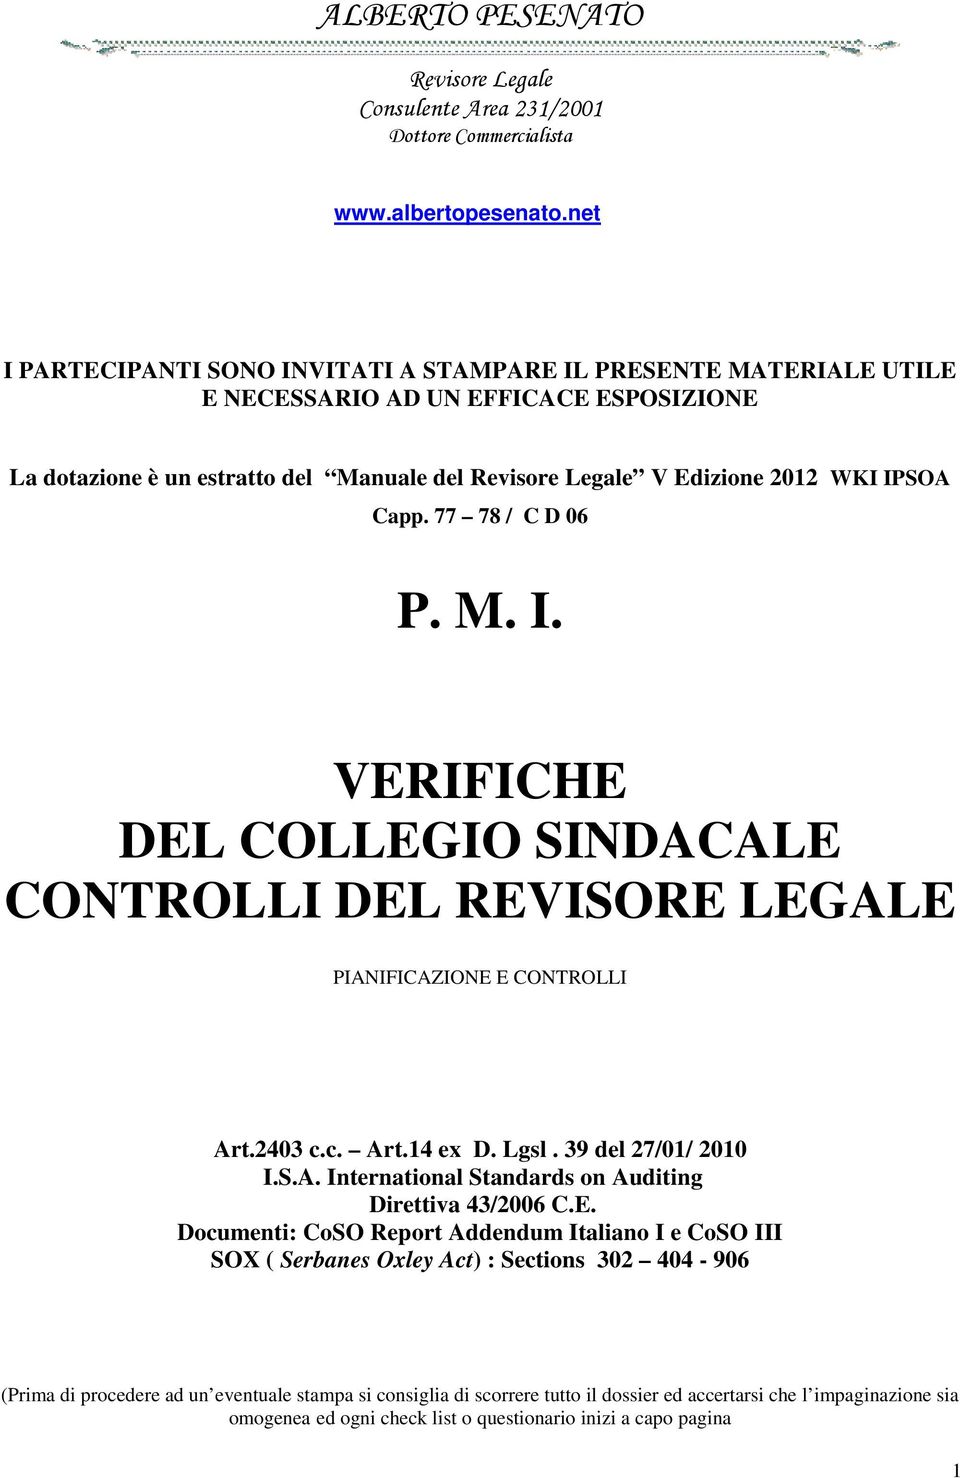 Capp. 77 78 / C D 06 P. M. I. VERIFICHE DEL COLLEGIO SINDACALE CONTROLLI DEL REVISORE LEGALE PIANIFICAZIONE E CONTROLLI Art.2403 c.c. Art.14 ex D. Lgsl. 39 del 27/01/ 2010 I.S.A. International Standards on Auditing Direttiva 43/2006 C.